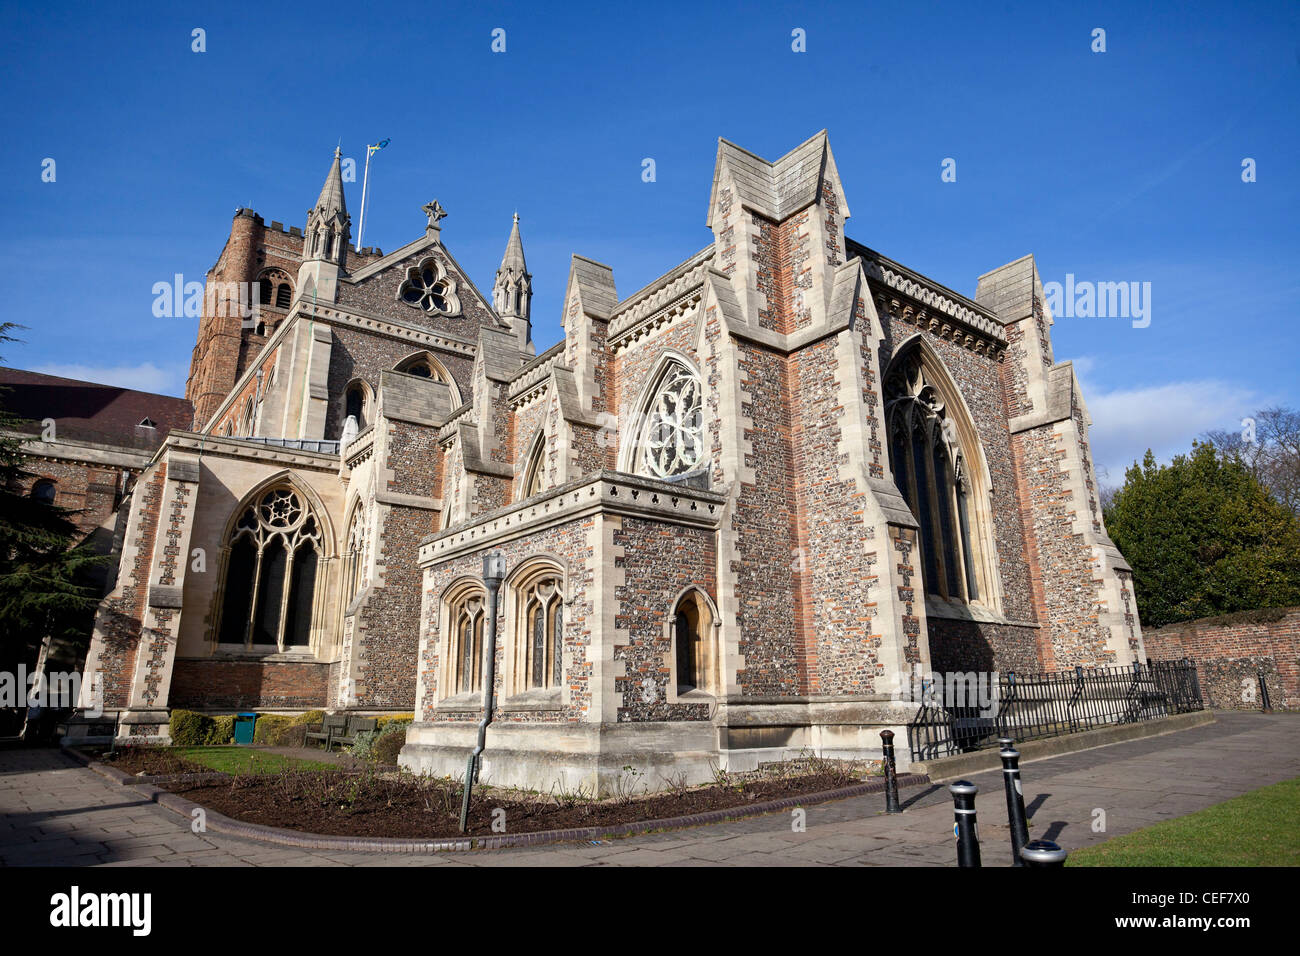 La Cathédrale et l'église abbatiale de St Alban, Hertfordshire, England, UK Banque D'Images